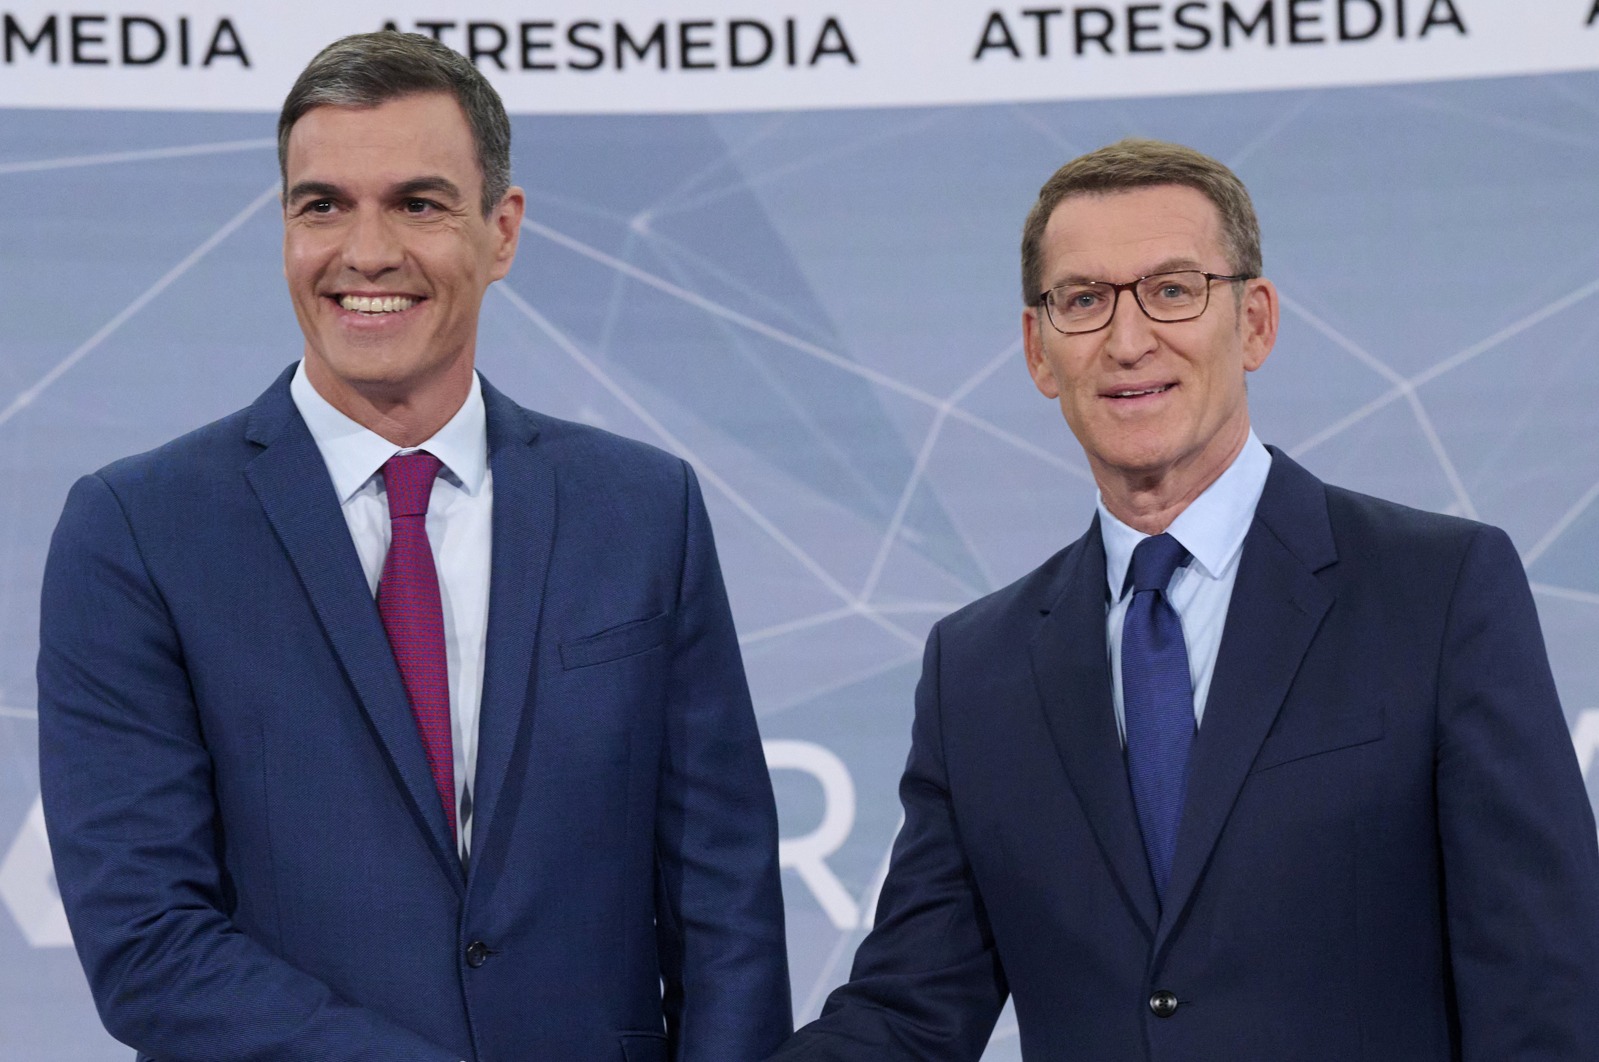 El debate entre Pedro Sánchez y Alberto Núñez Feijóo en Atresmedia revienta los audímetros